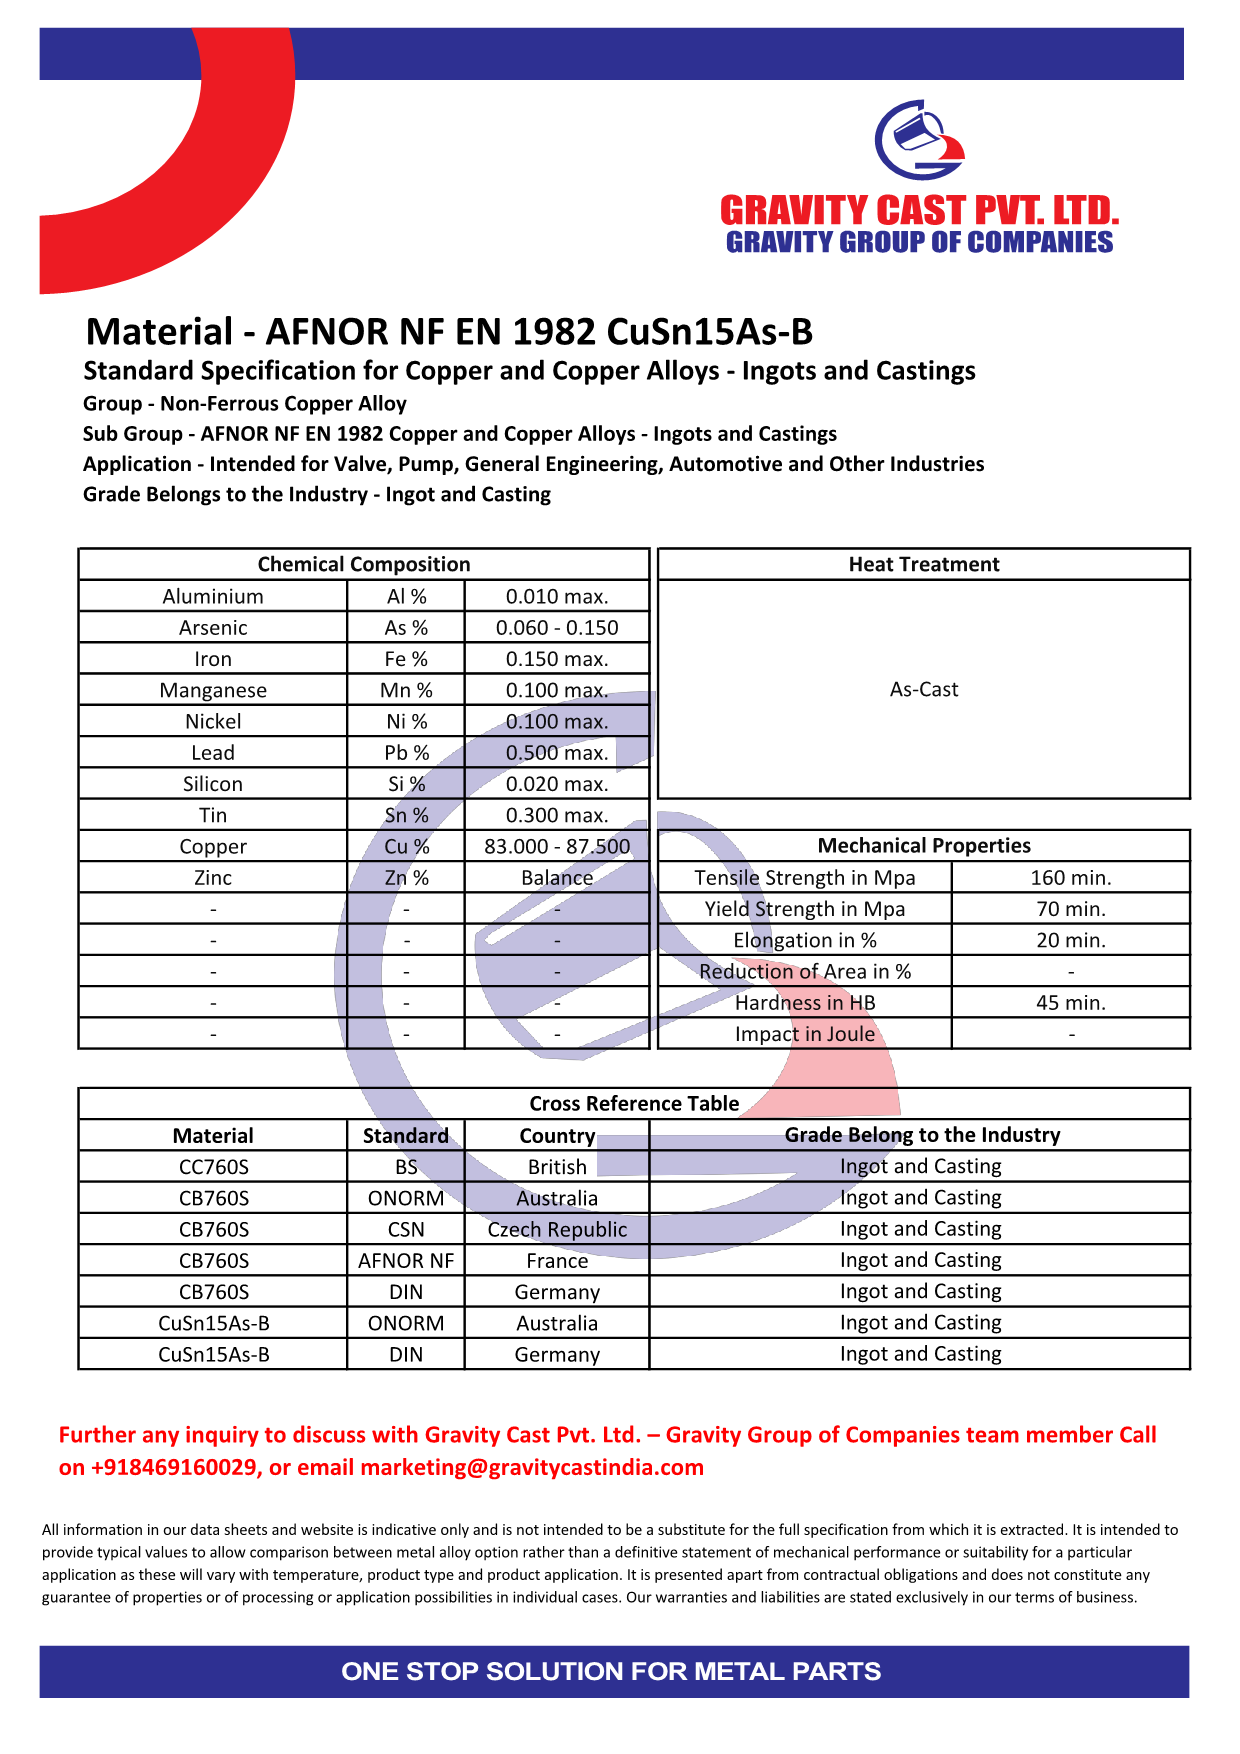 AFNOR NF EN 1982 CuSn15As-B.pdf